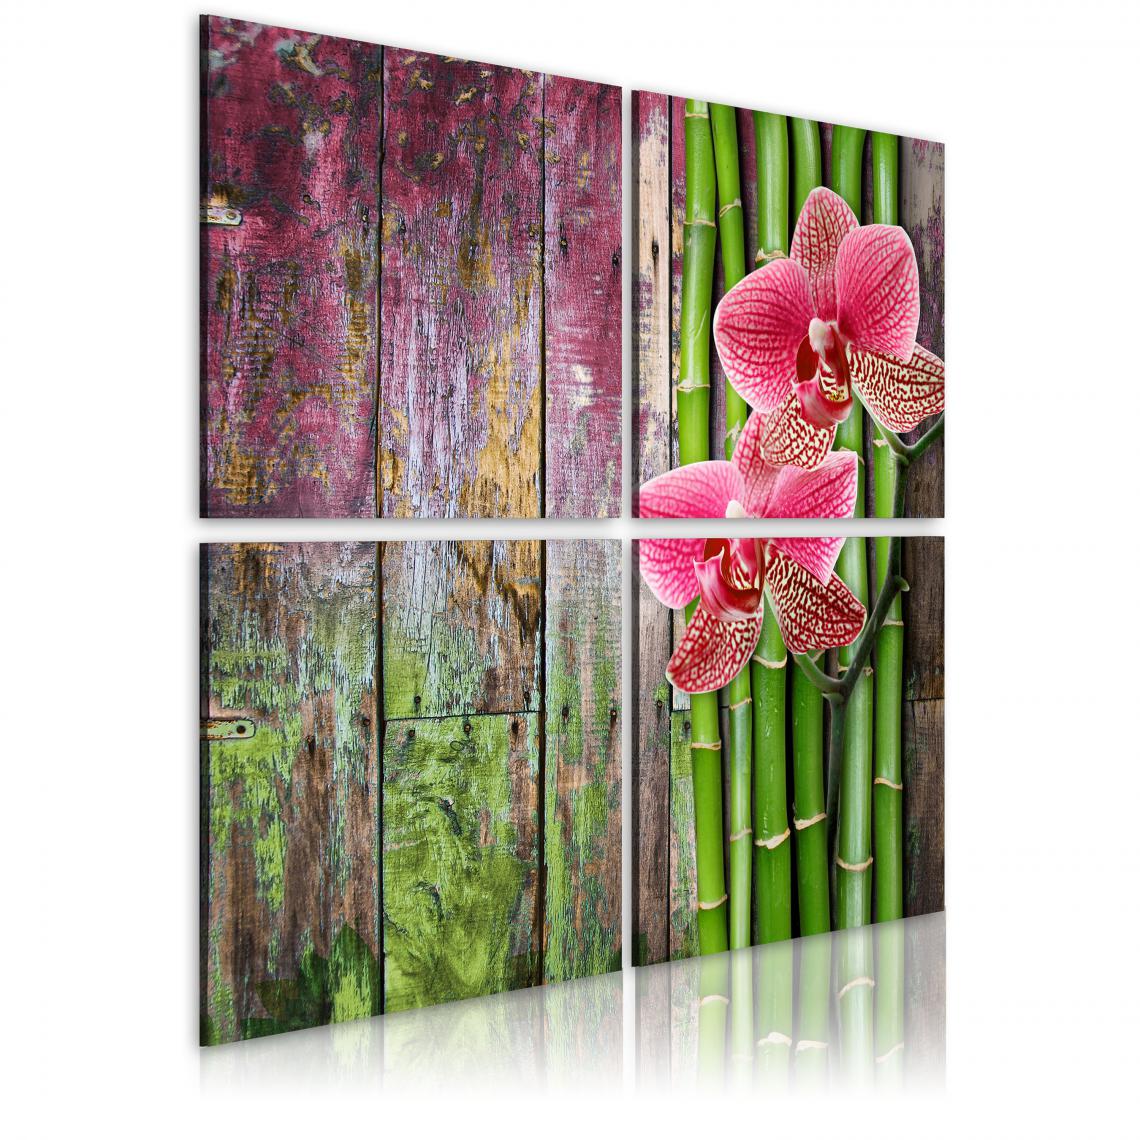 Decoshop26 - Tableau sur toile en 4 panneaux décoration murale image imprimée cadre en bois à suspendre Bambou et orchidée 60x60 cm 11_0008907 - Tableaux, peintures